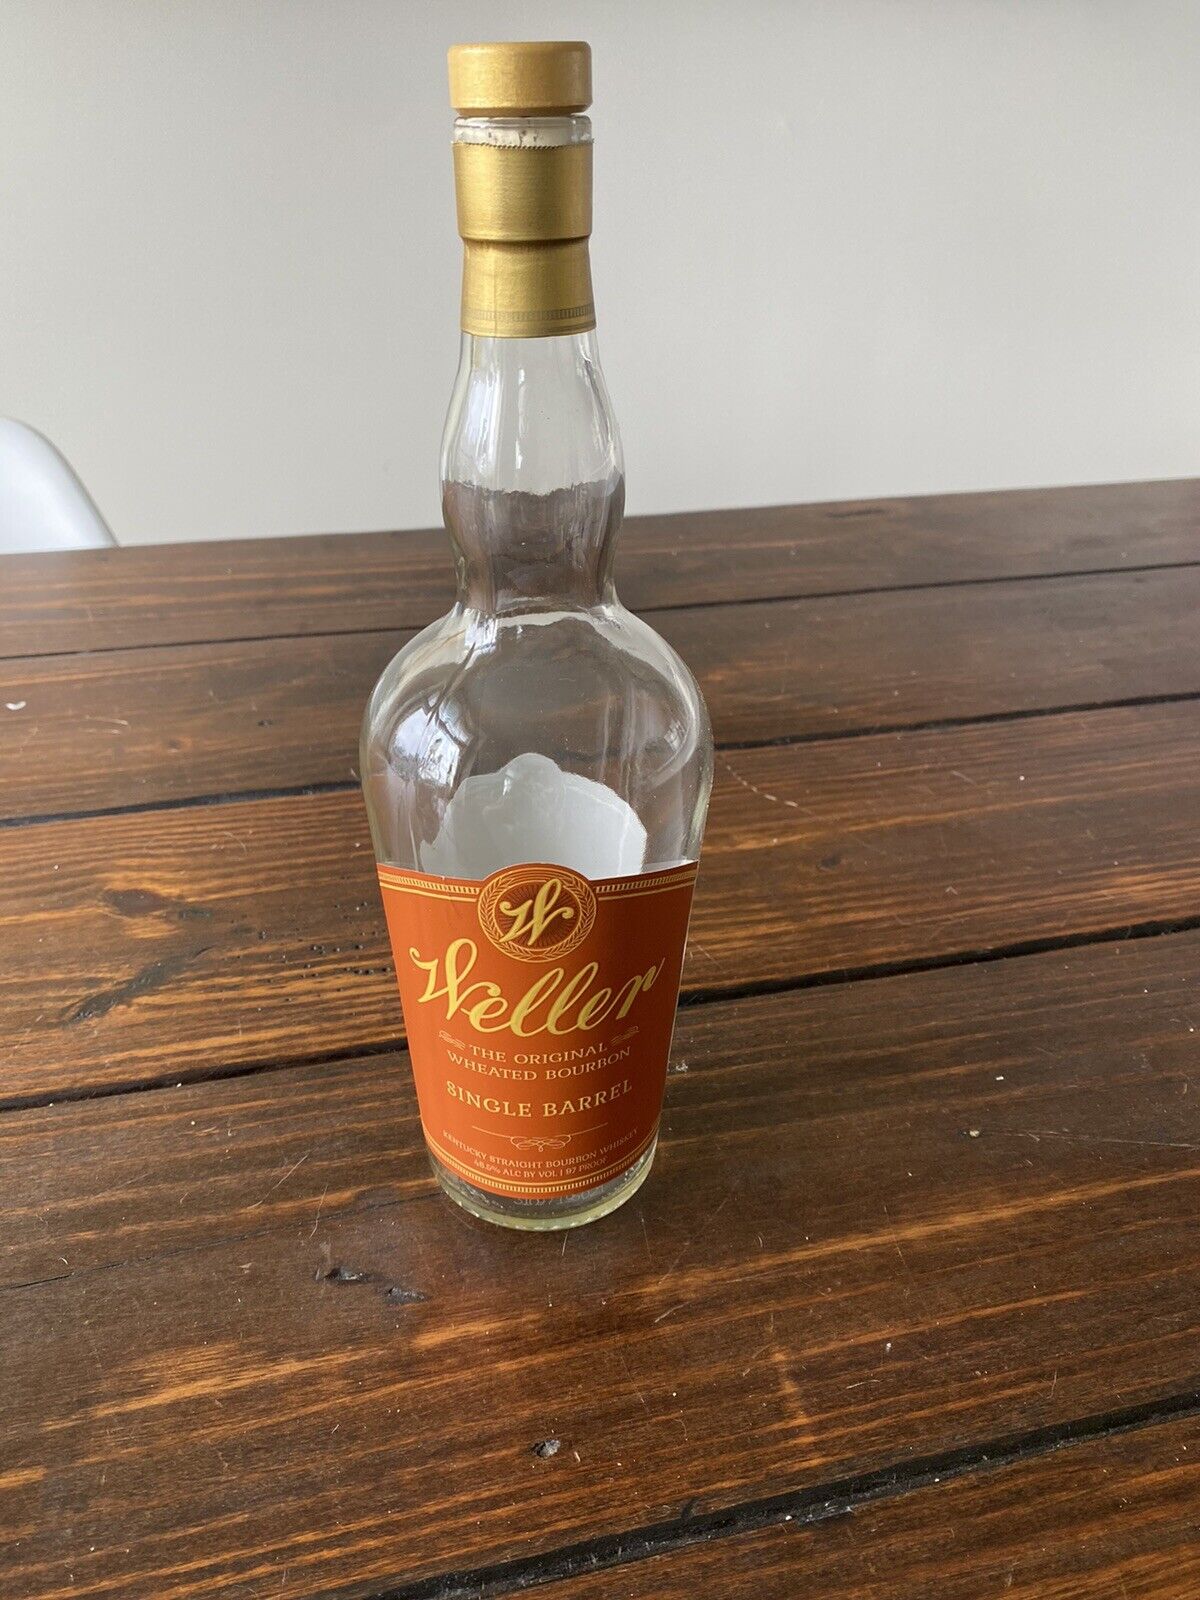 Weller SiB Single Barrel Orange Empty Bourbon Bottle